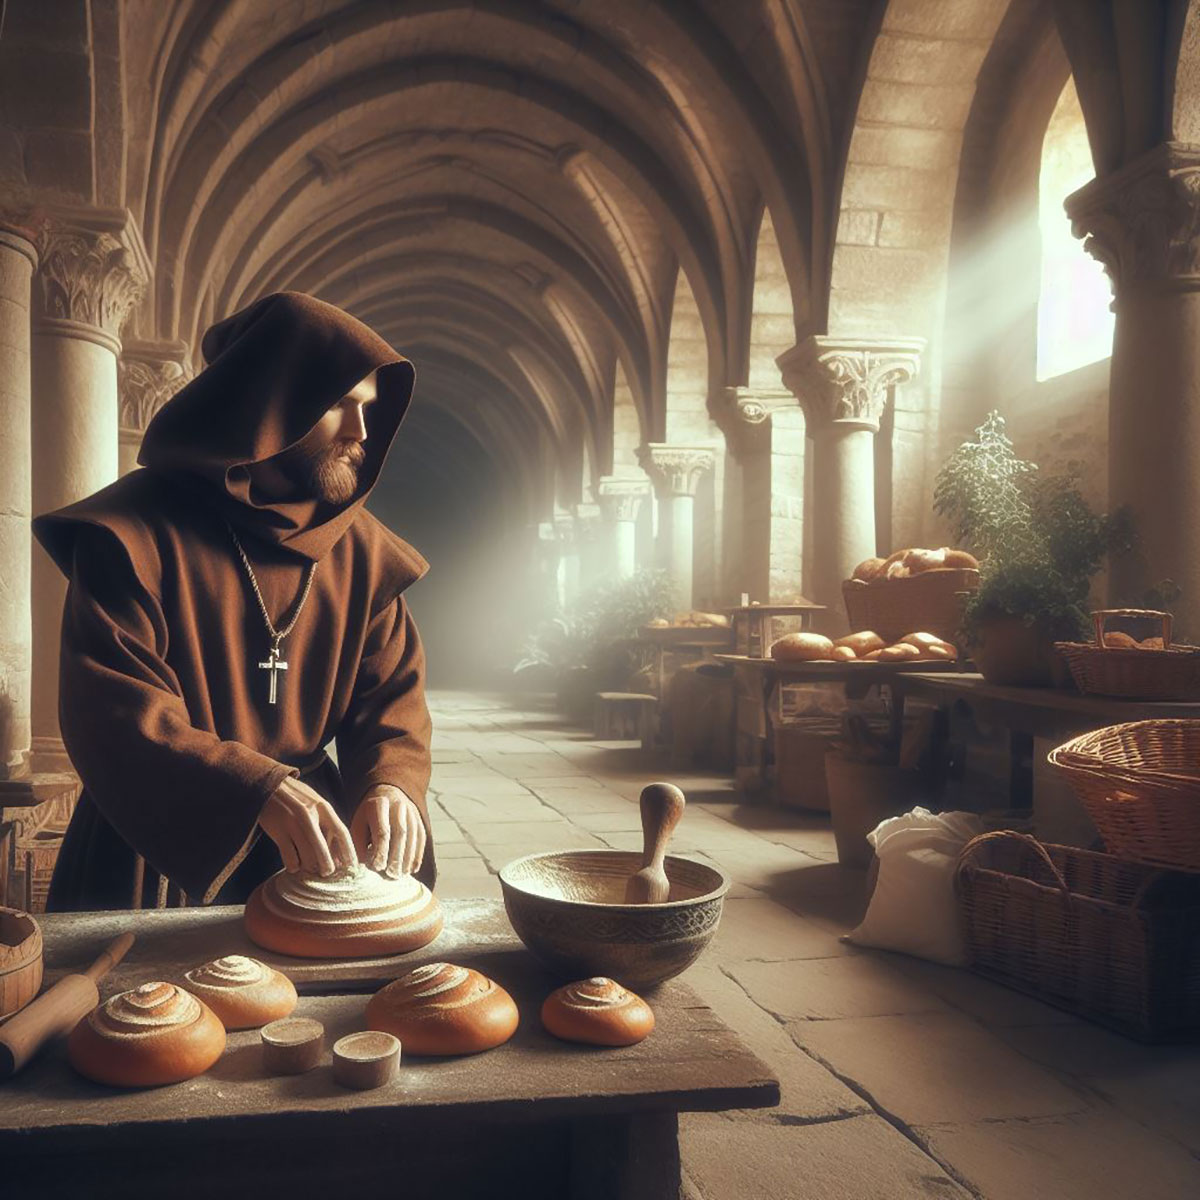 Brotgeschichte - Brot backen im Mittelalter